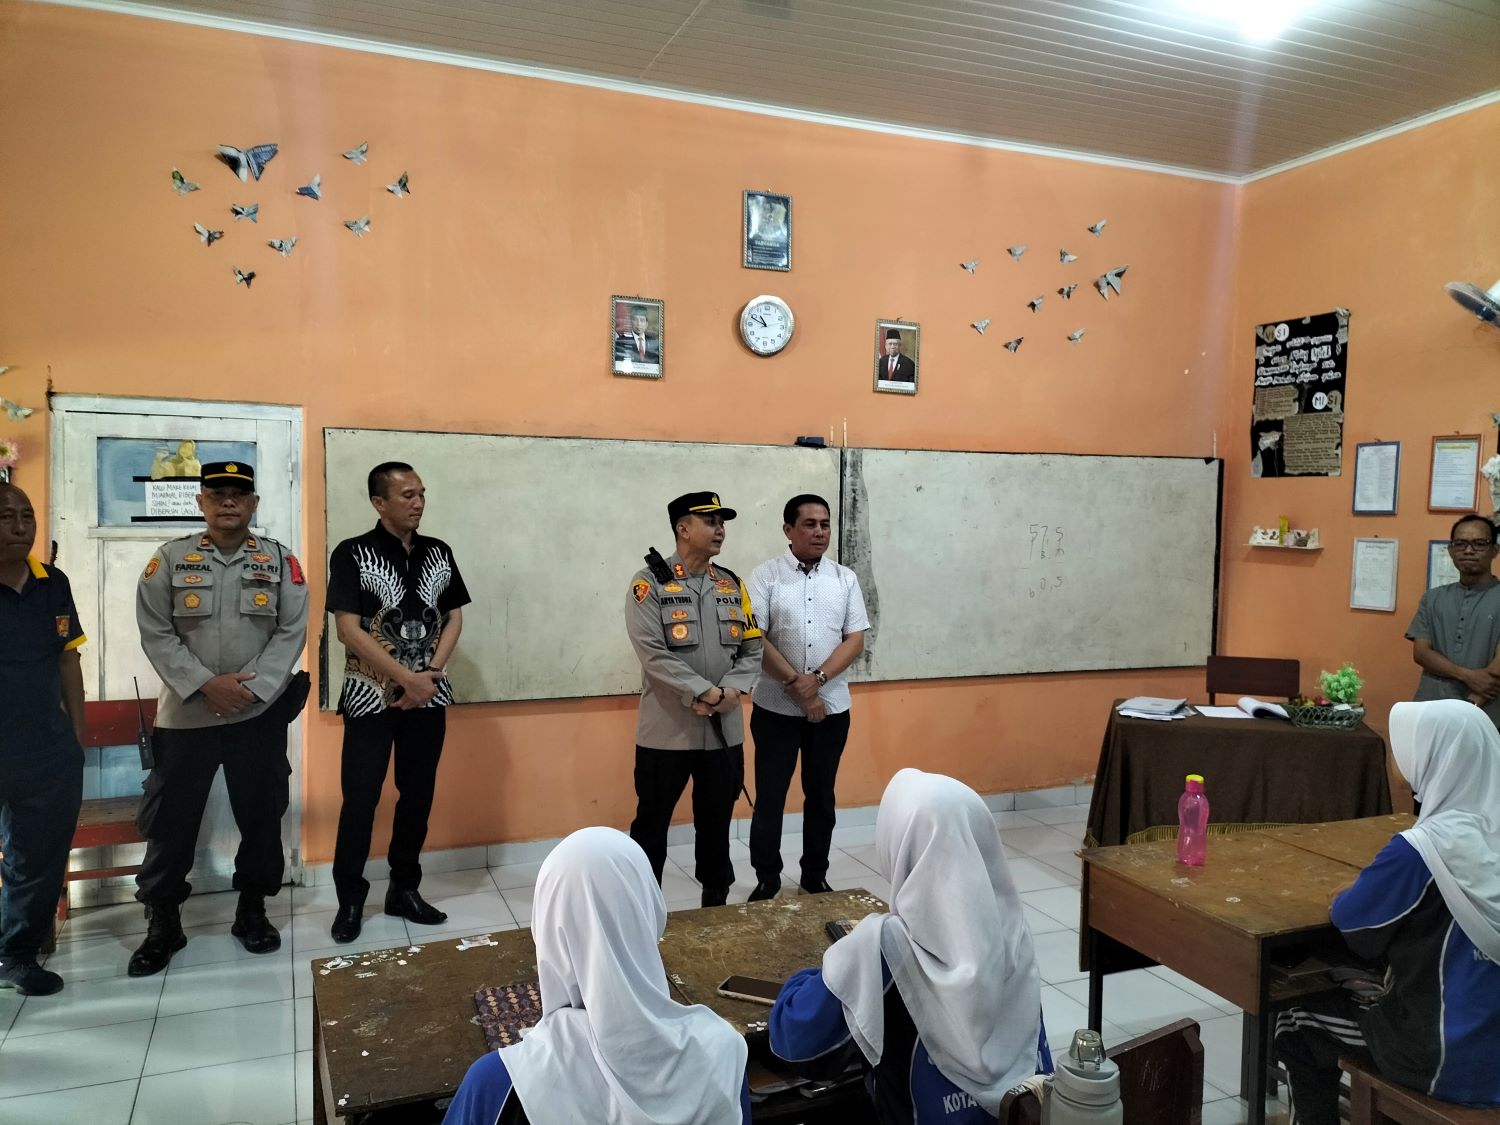 Kunjungi Sekolah, Kapolres Lubuklinggau AKBP Indra Arya Yudha Ingatkan Pelajar Bijak Gunakan Gadget 